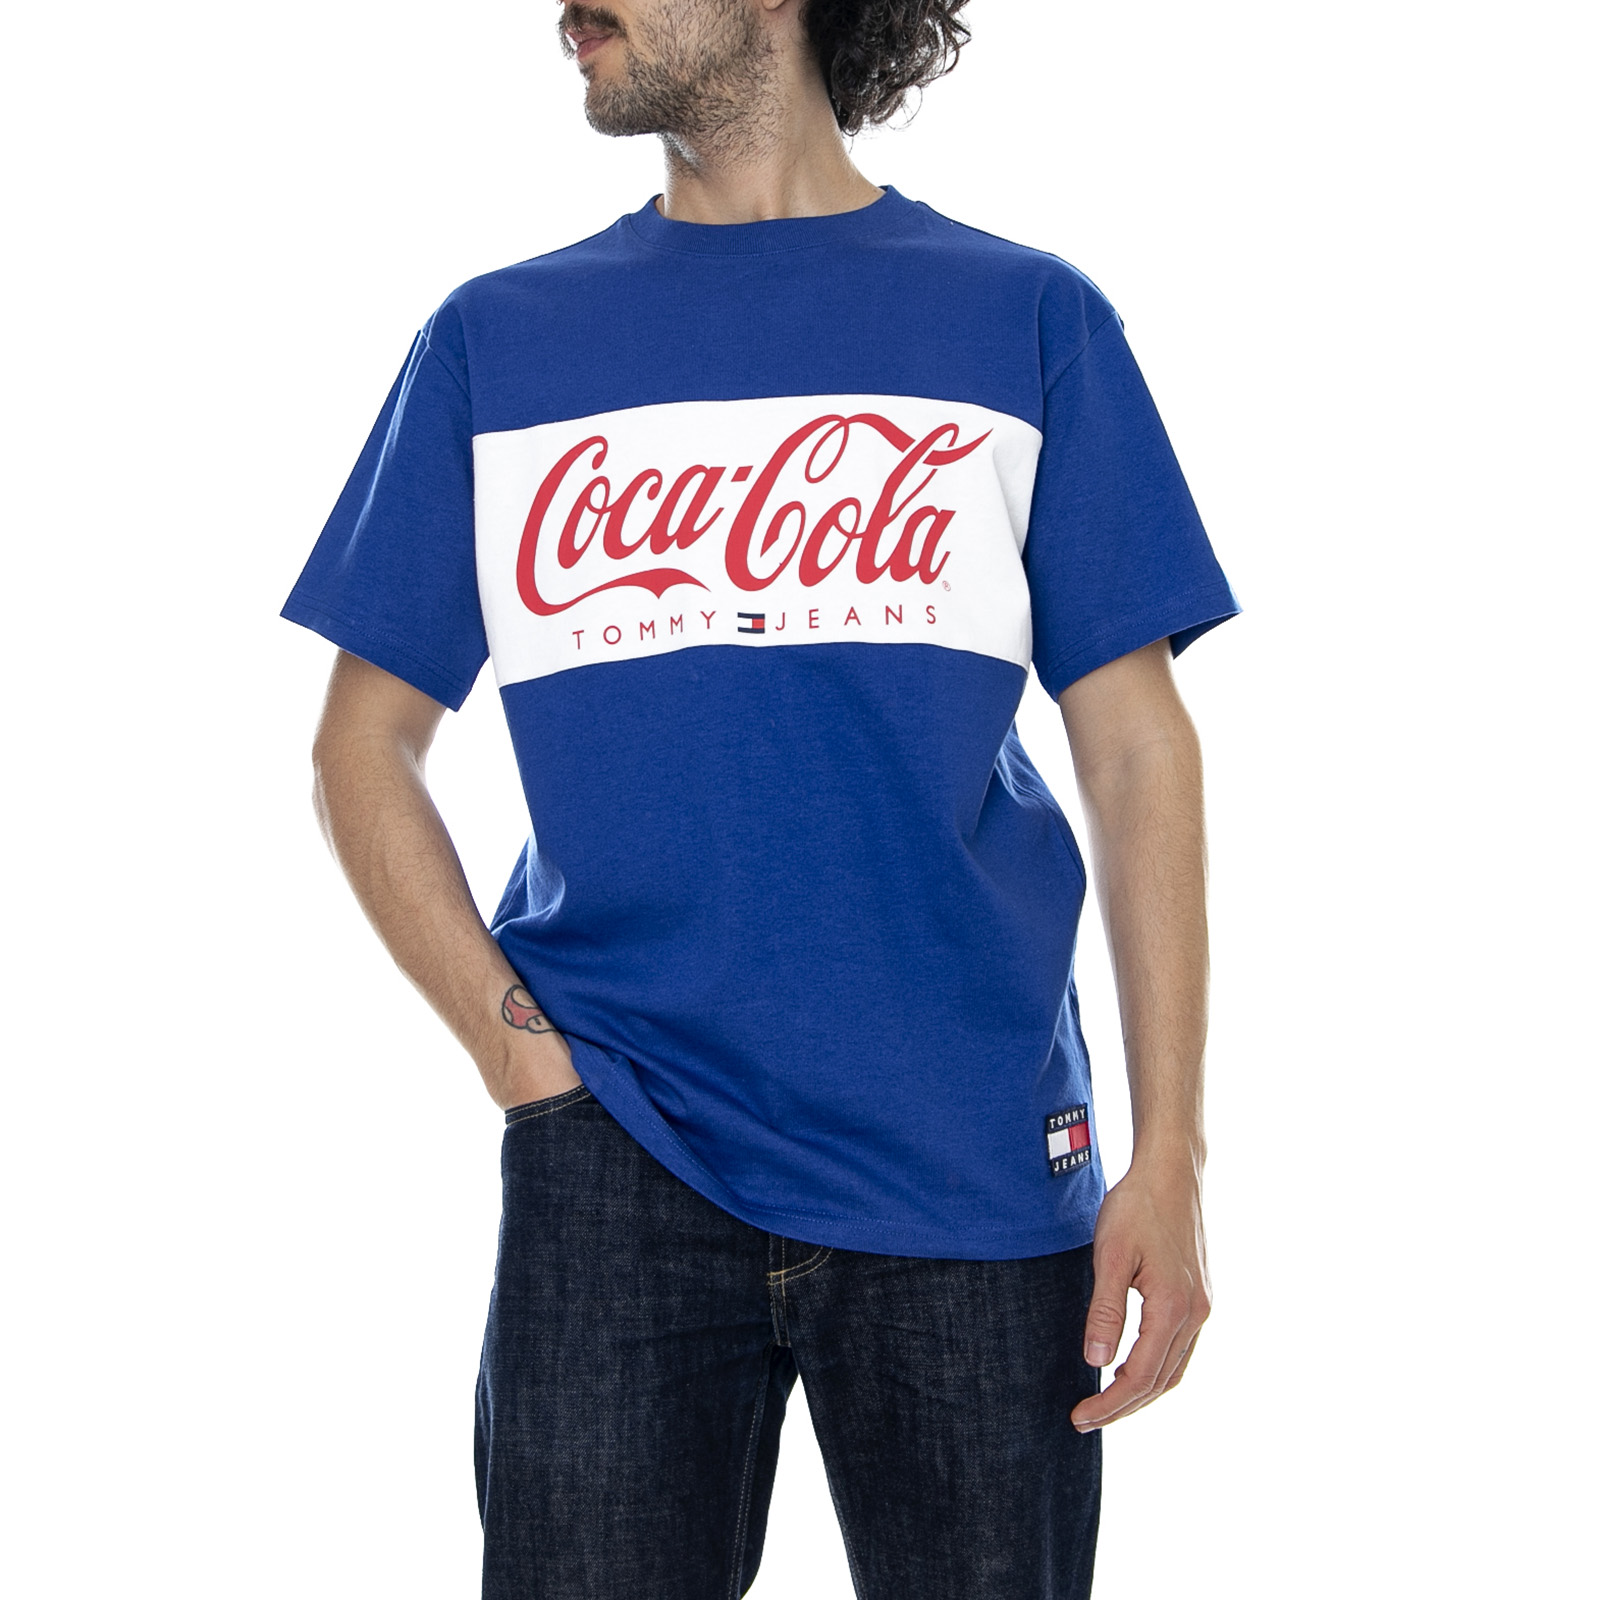 tommy hilfiger coca cola t shirt